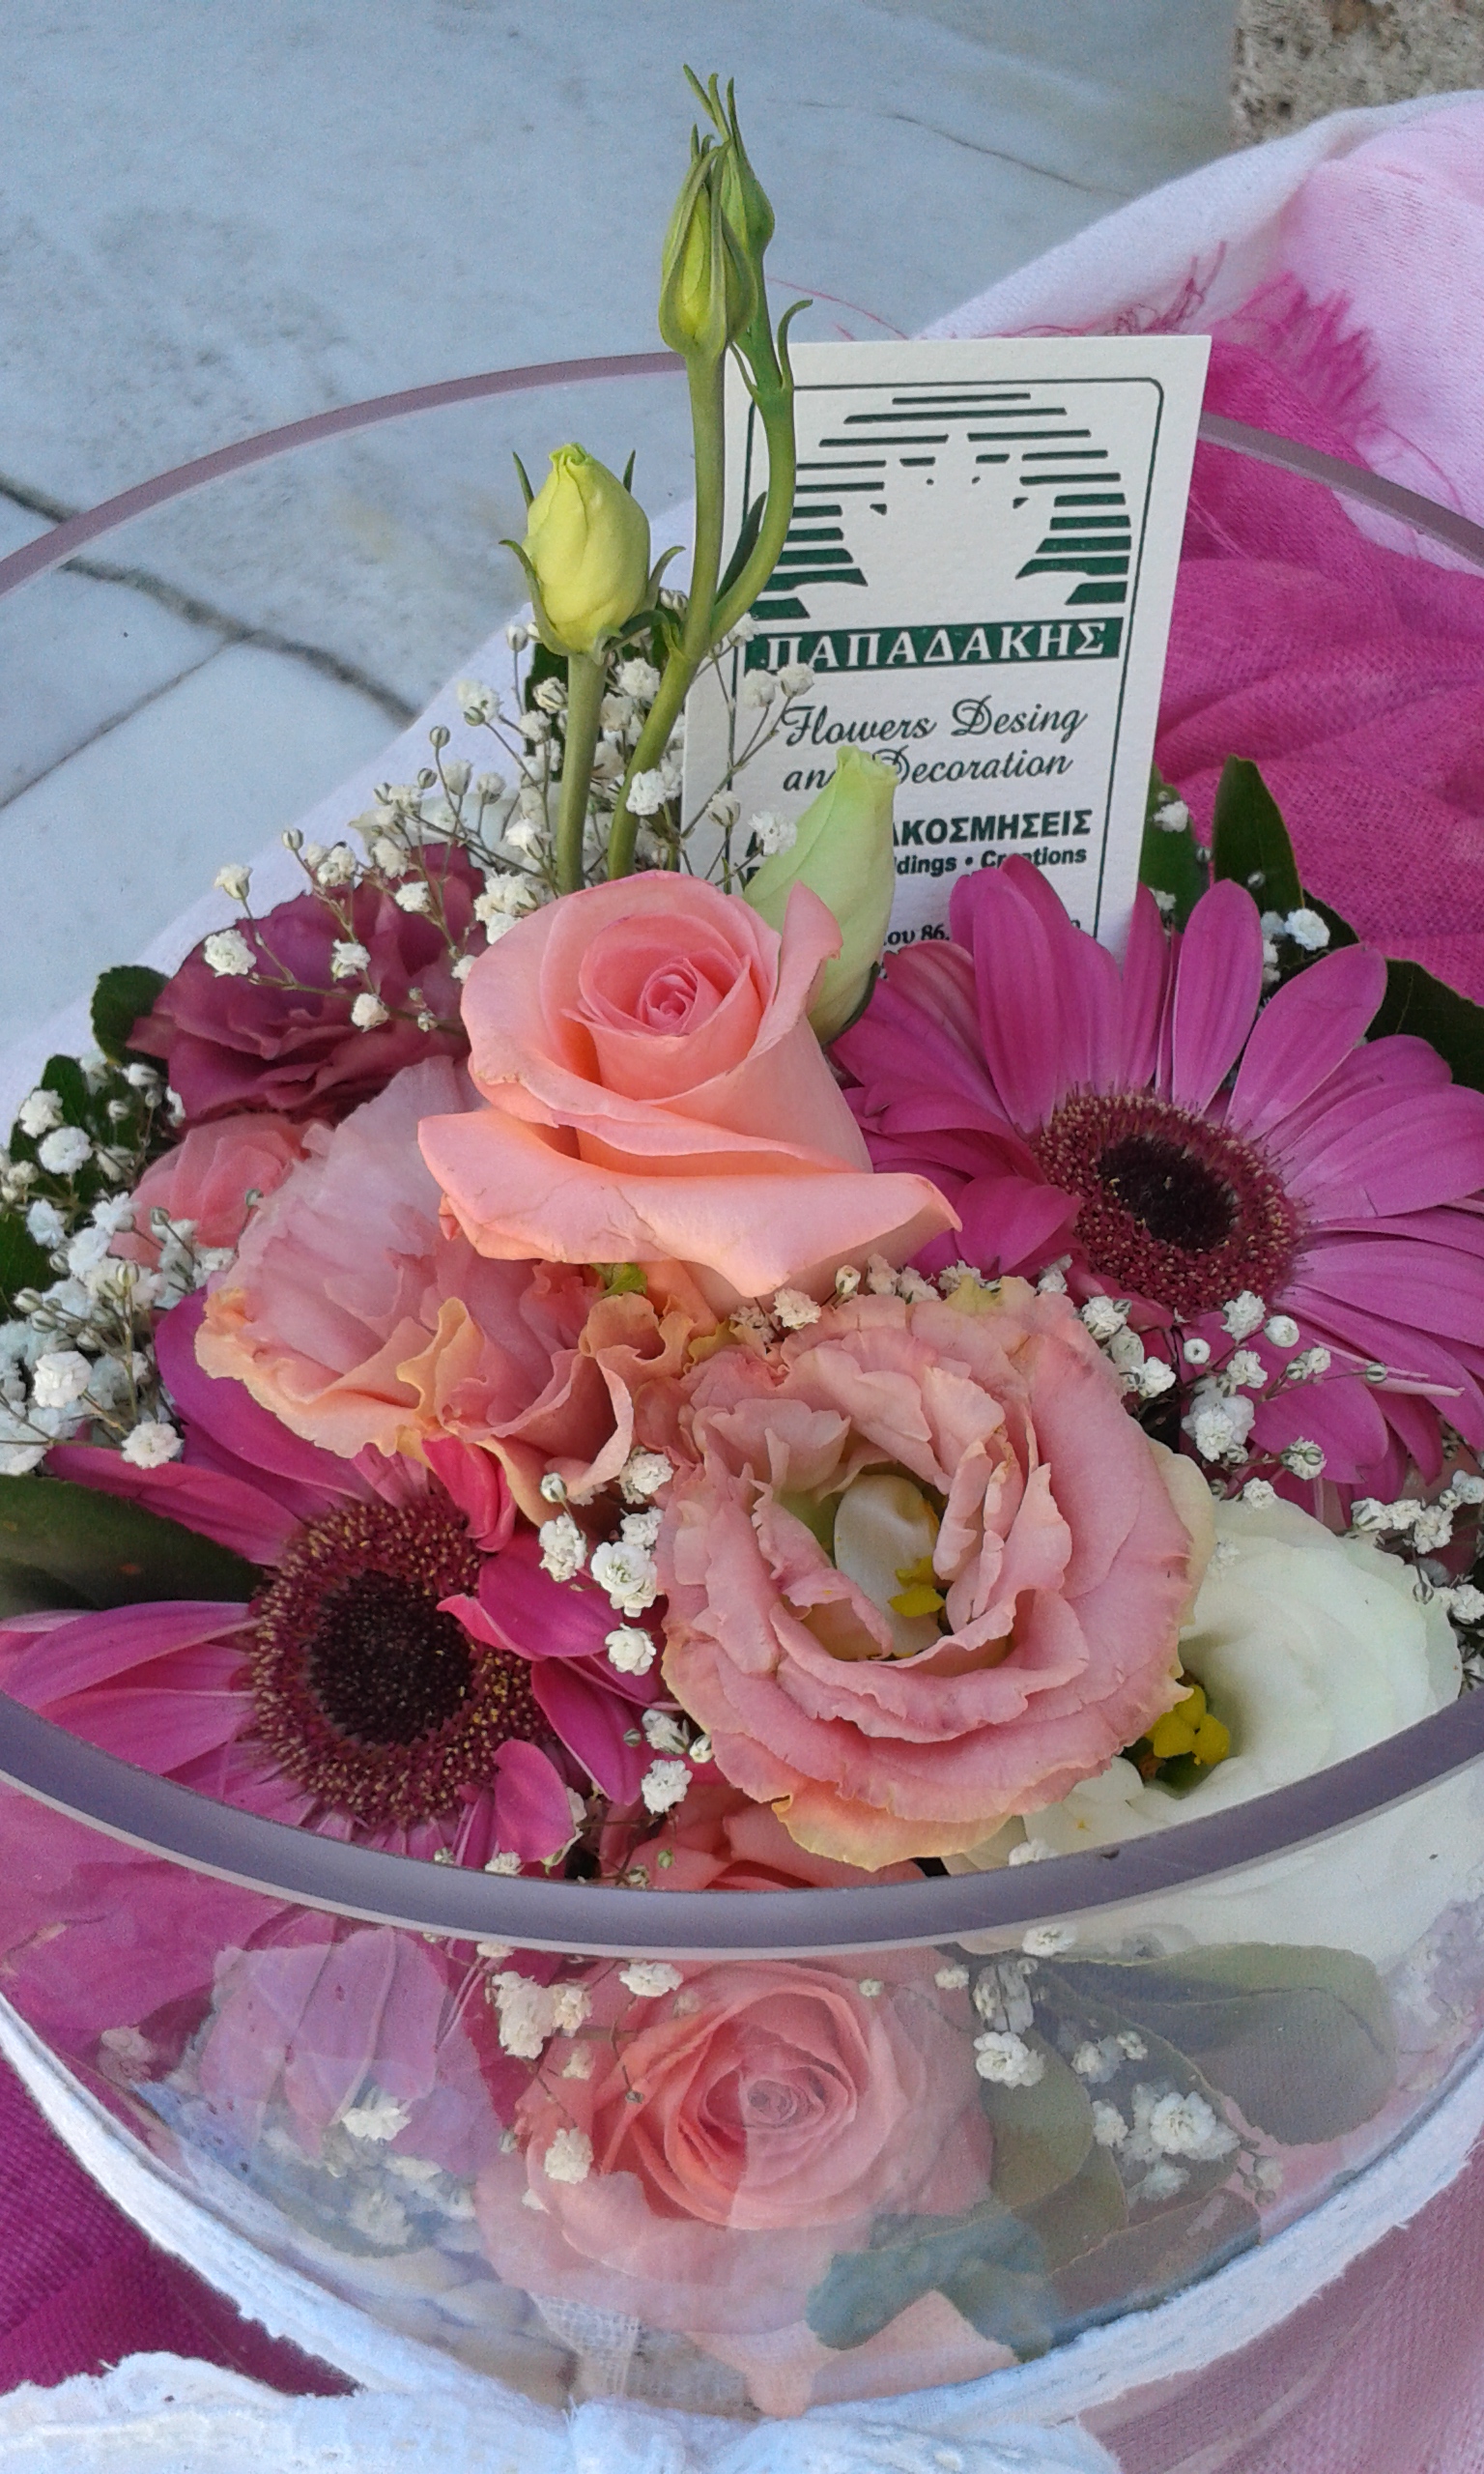 Σύνθεση με ροζ -φούξια άνθη σε βάζο